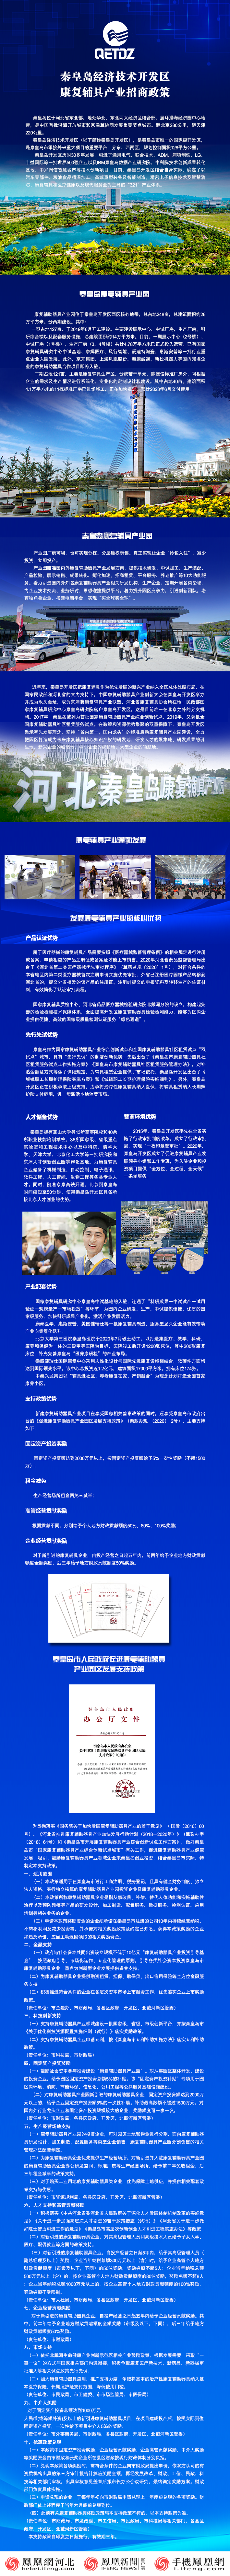 长图丨秦皇岛经济技术开发区康复辅具产业招商政策